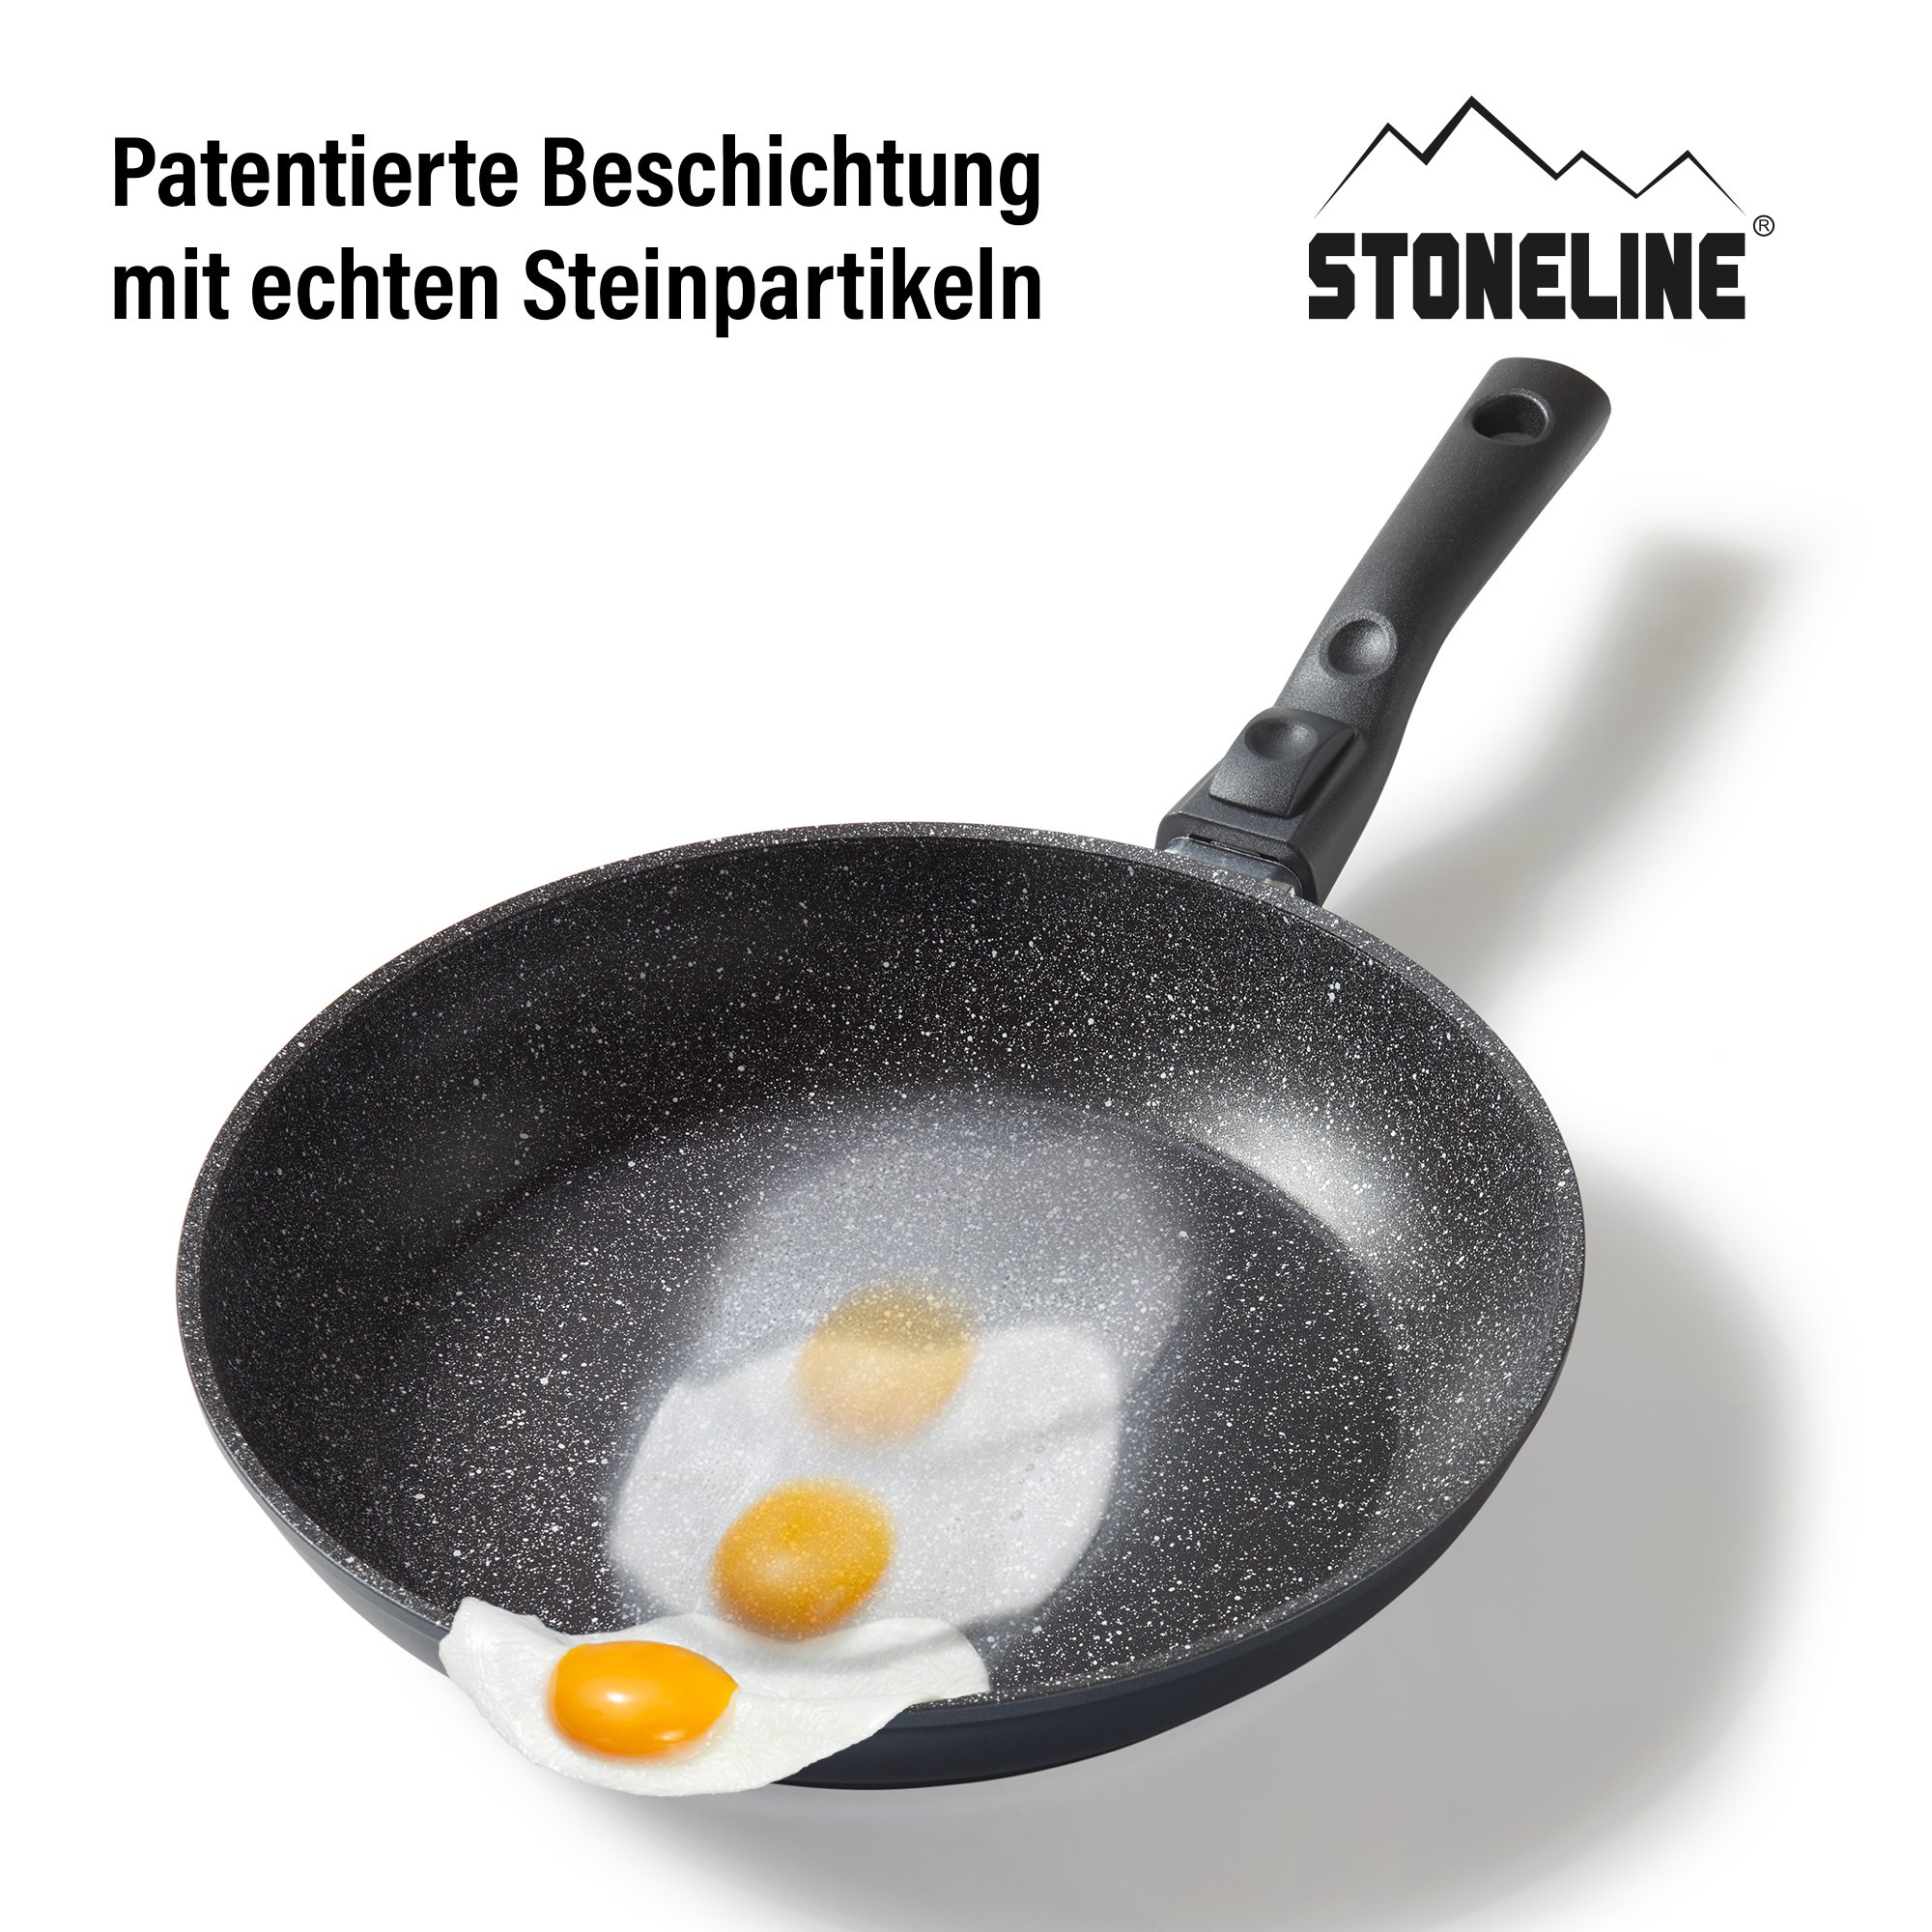 STONELINE® FLEX Schmorpfanne 24 cm, mit abnehmbarem Griff, Made in Germany, Induktion geeignet